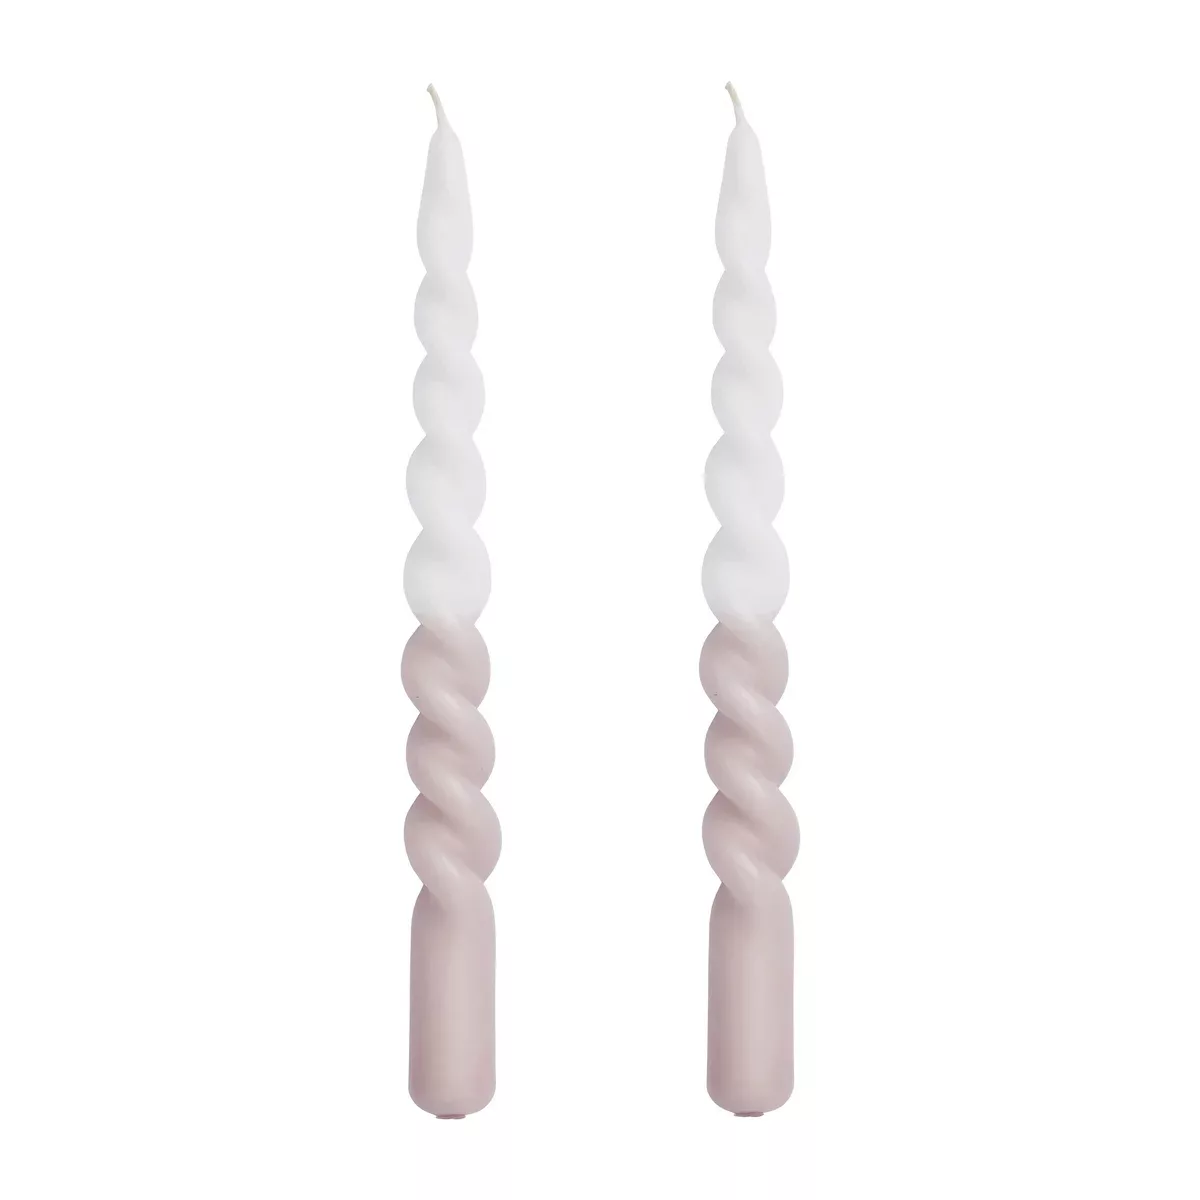 Twisted gedrehte Kerze zweifarbig 25cm 2er Pack Bark-white günstig online kaufen